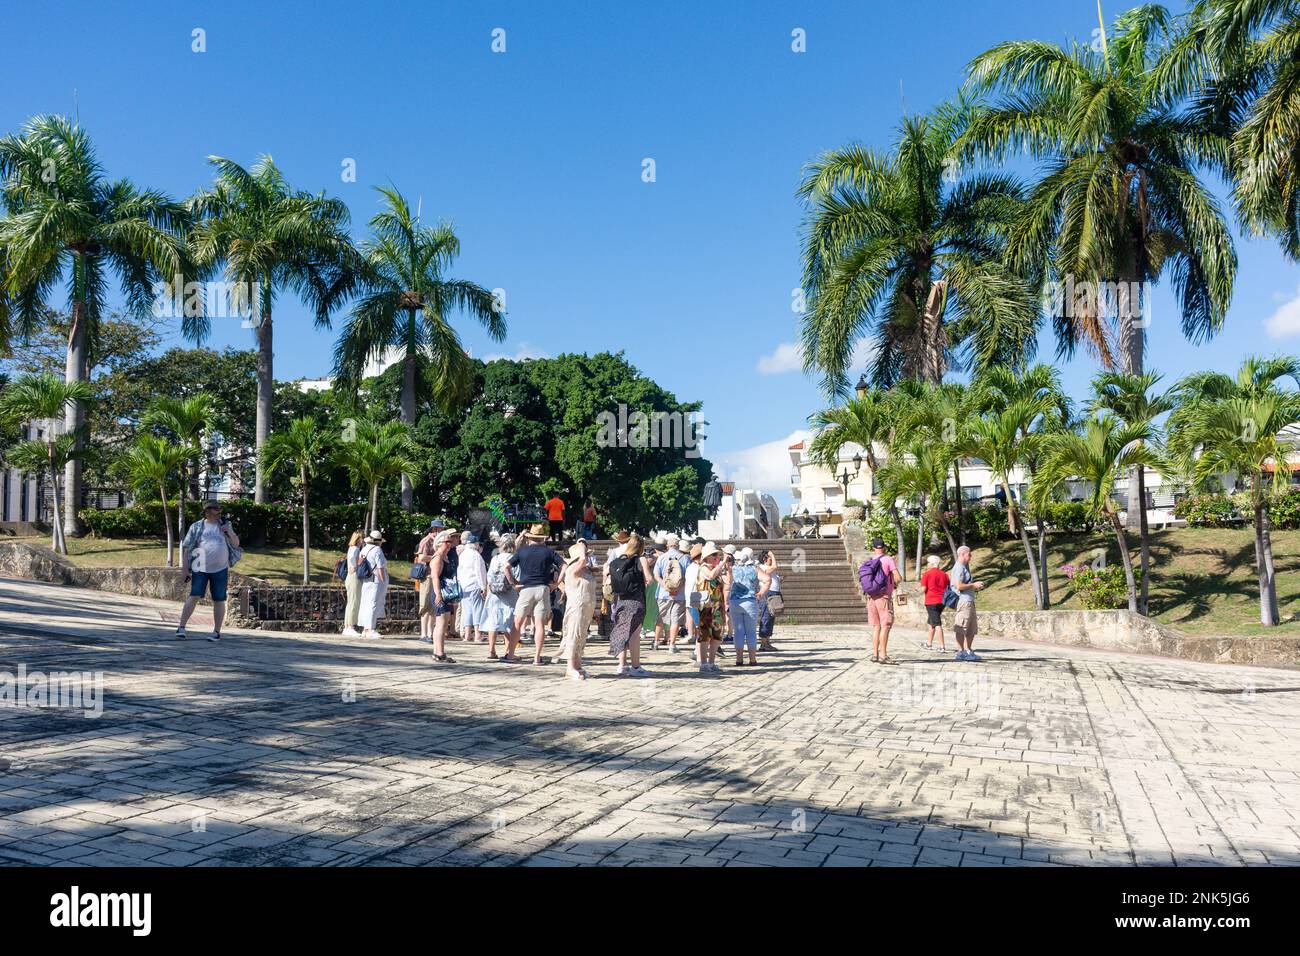 Visite de groupe, Plaza de la Espana de la Hispanidad, Saint-Domingue, République dominicaine (Republica Dominicana), grandes Antilles, Caraïbes Banque D'Images